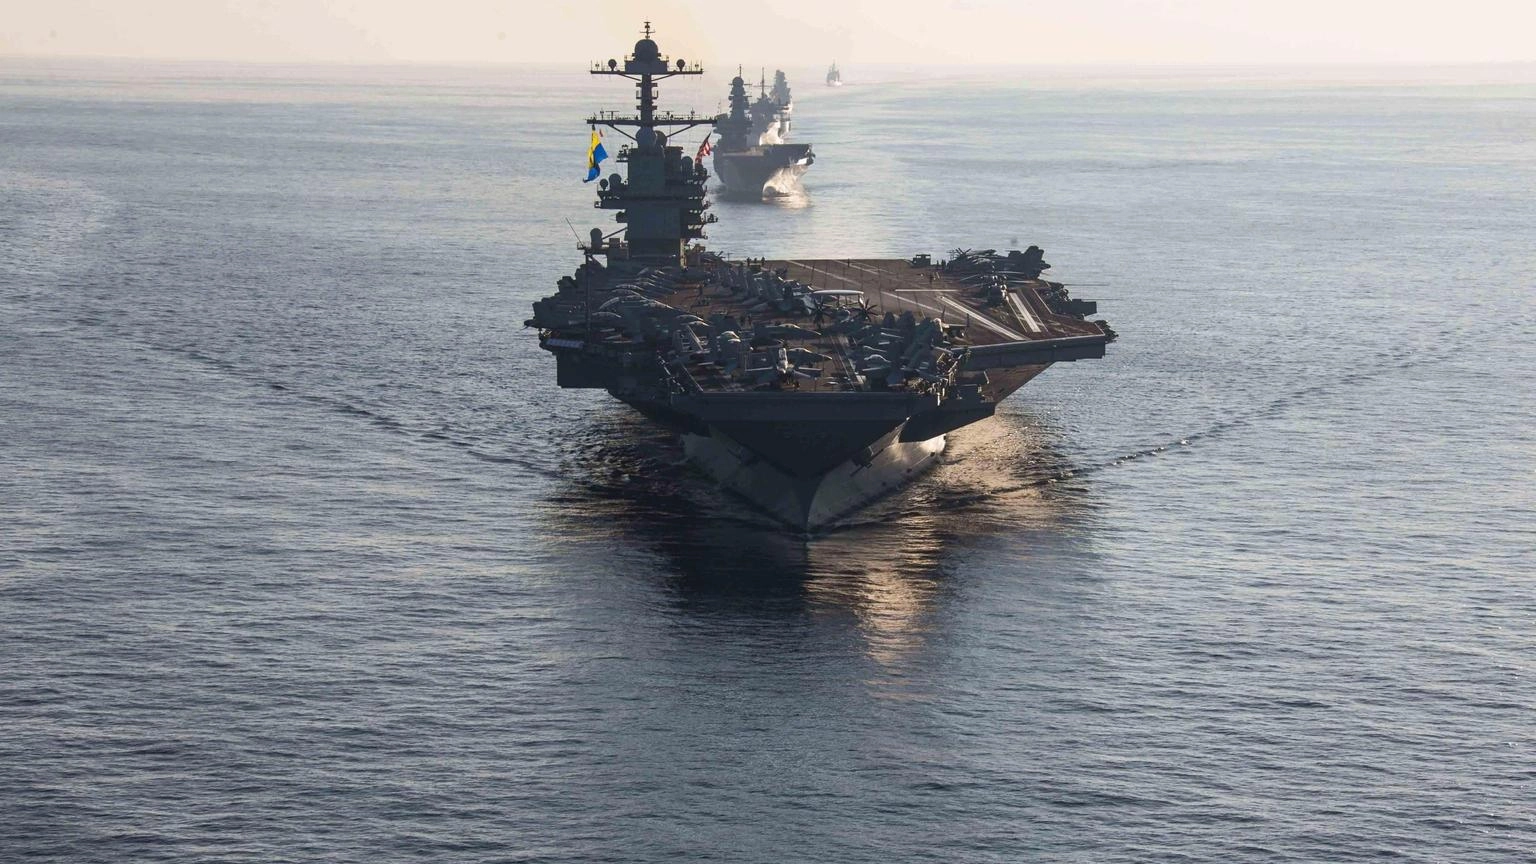 Aereo militare Usa si schianta nel Mediterraneo, 5 morti: una portaerei americana